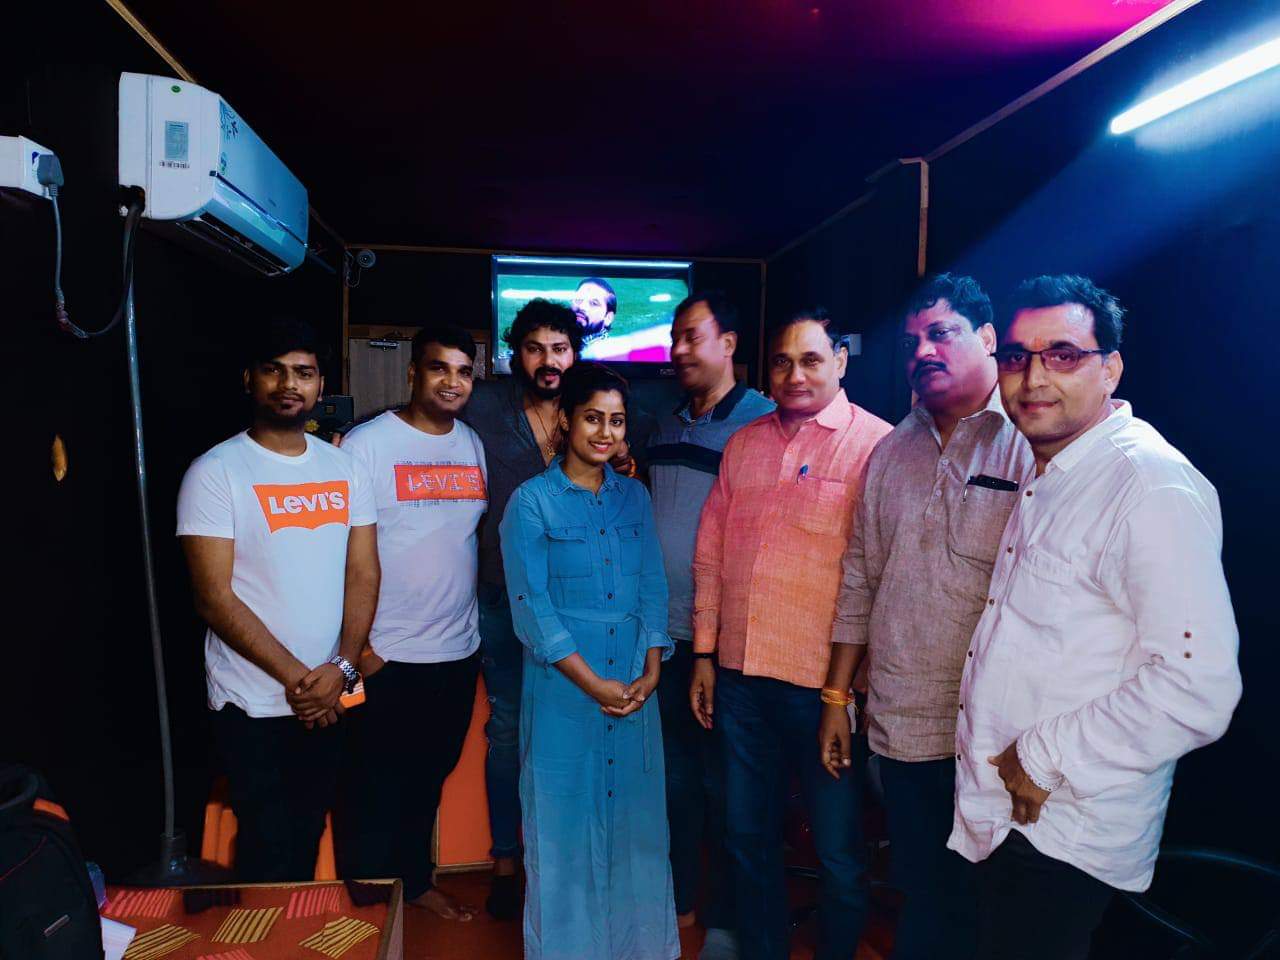 निर्देशक sujeet kumar singh सिंह की फिल्म “नरसिम्हा” जल्द ही आपके नजदीकी सिनेमा घरों में